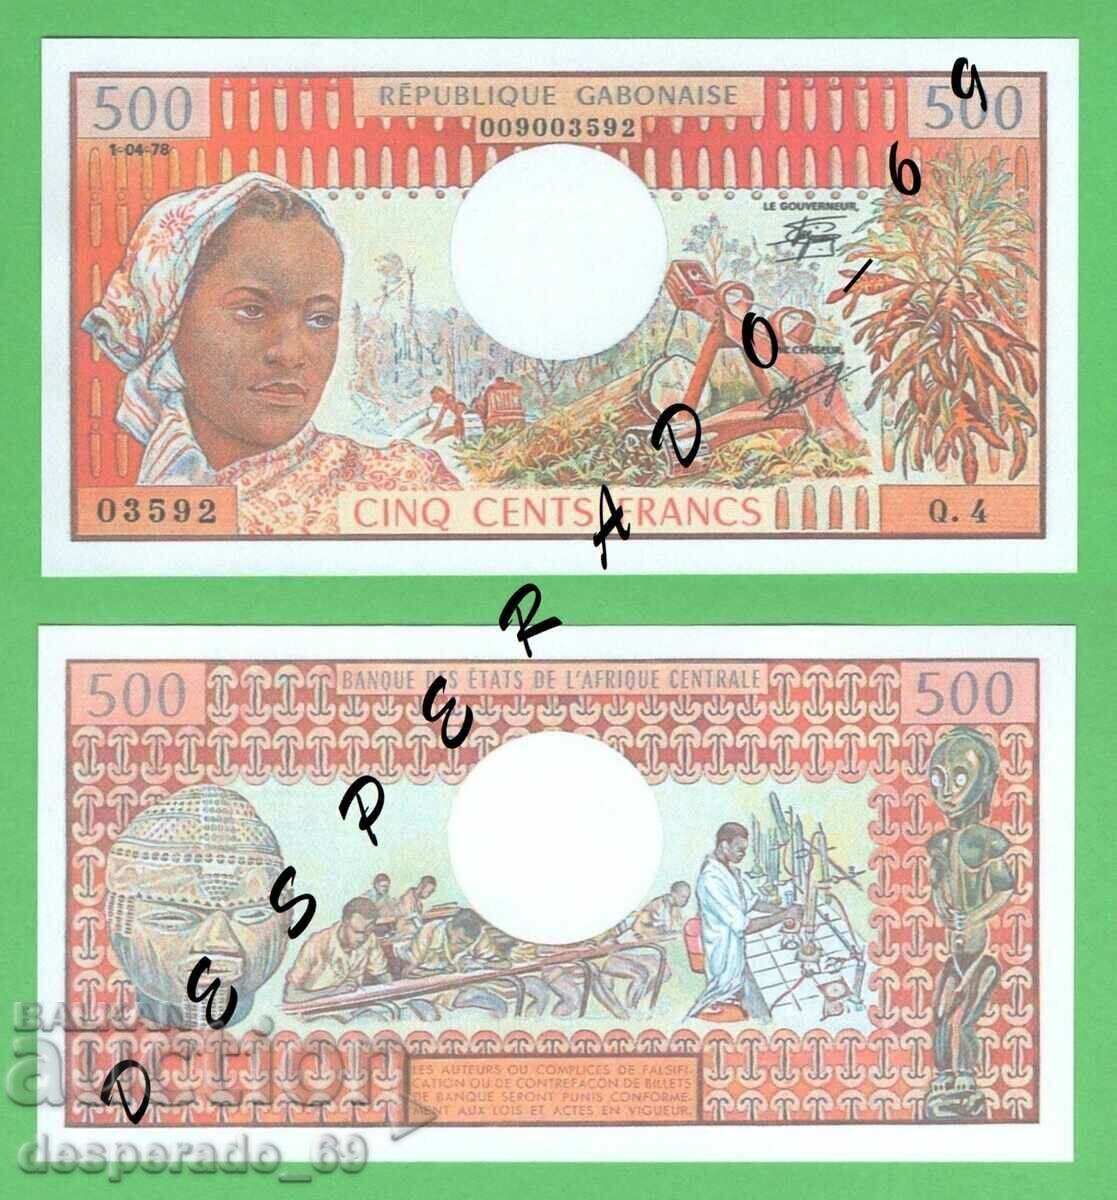 (¯`'•.¸(reproduction) GABON 500 francs 1978 UNC¸.•'´¯)